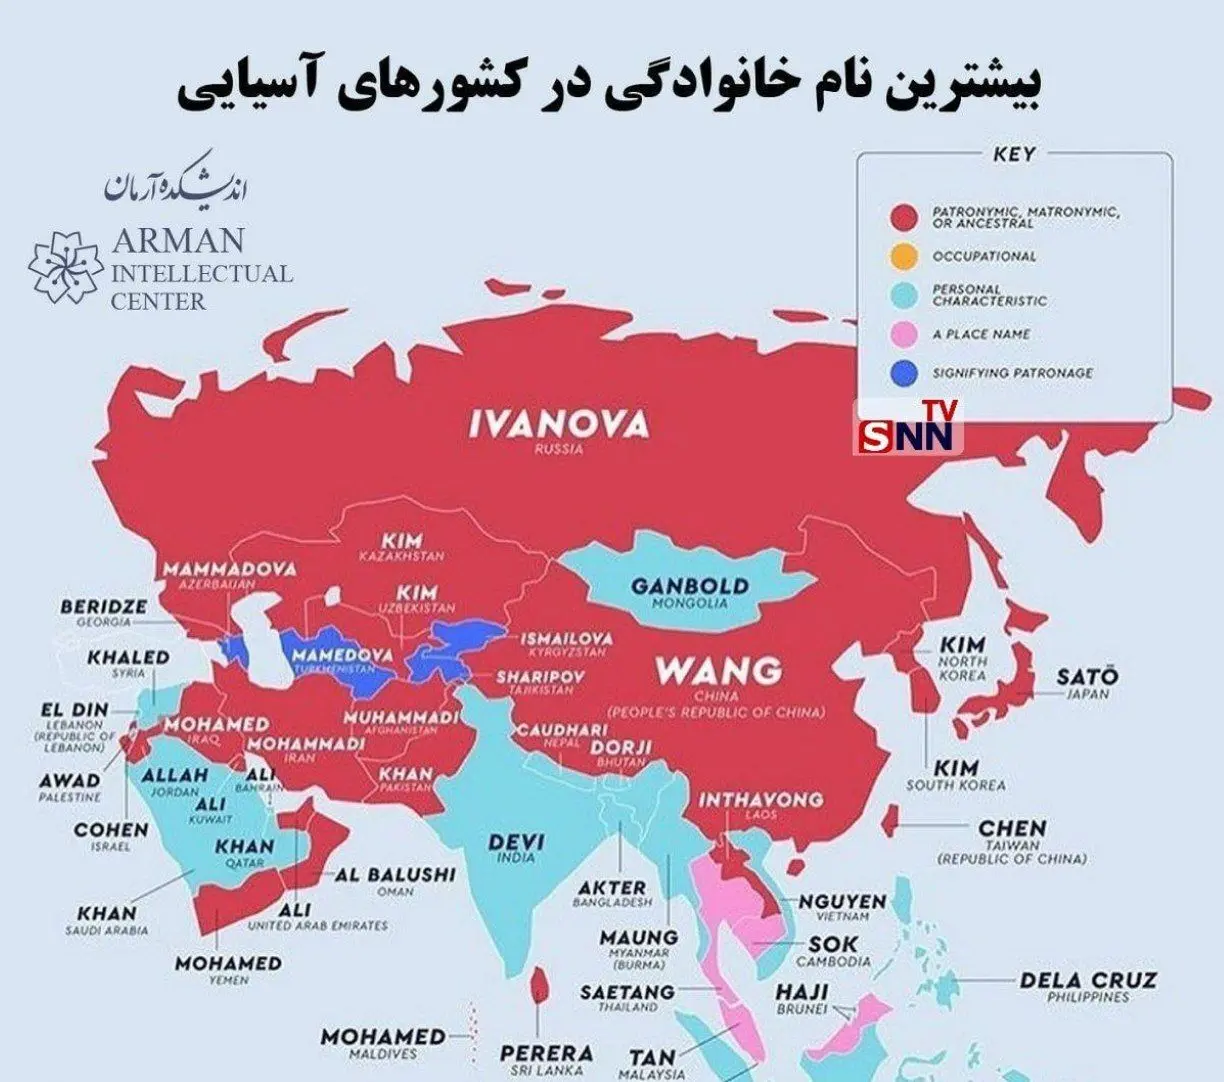 بیشترین نام خانوادگی در کشورهای آسیایی